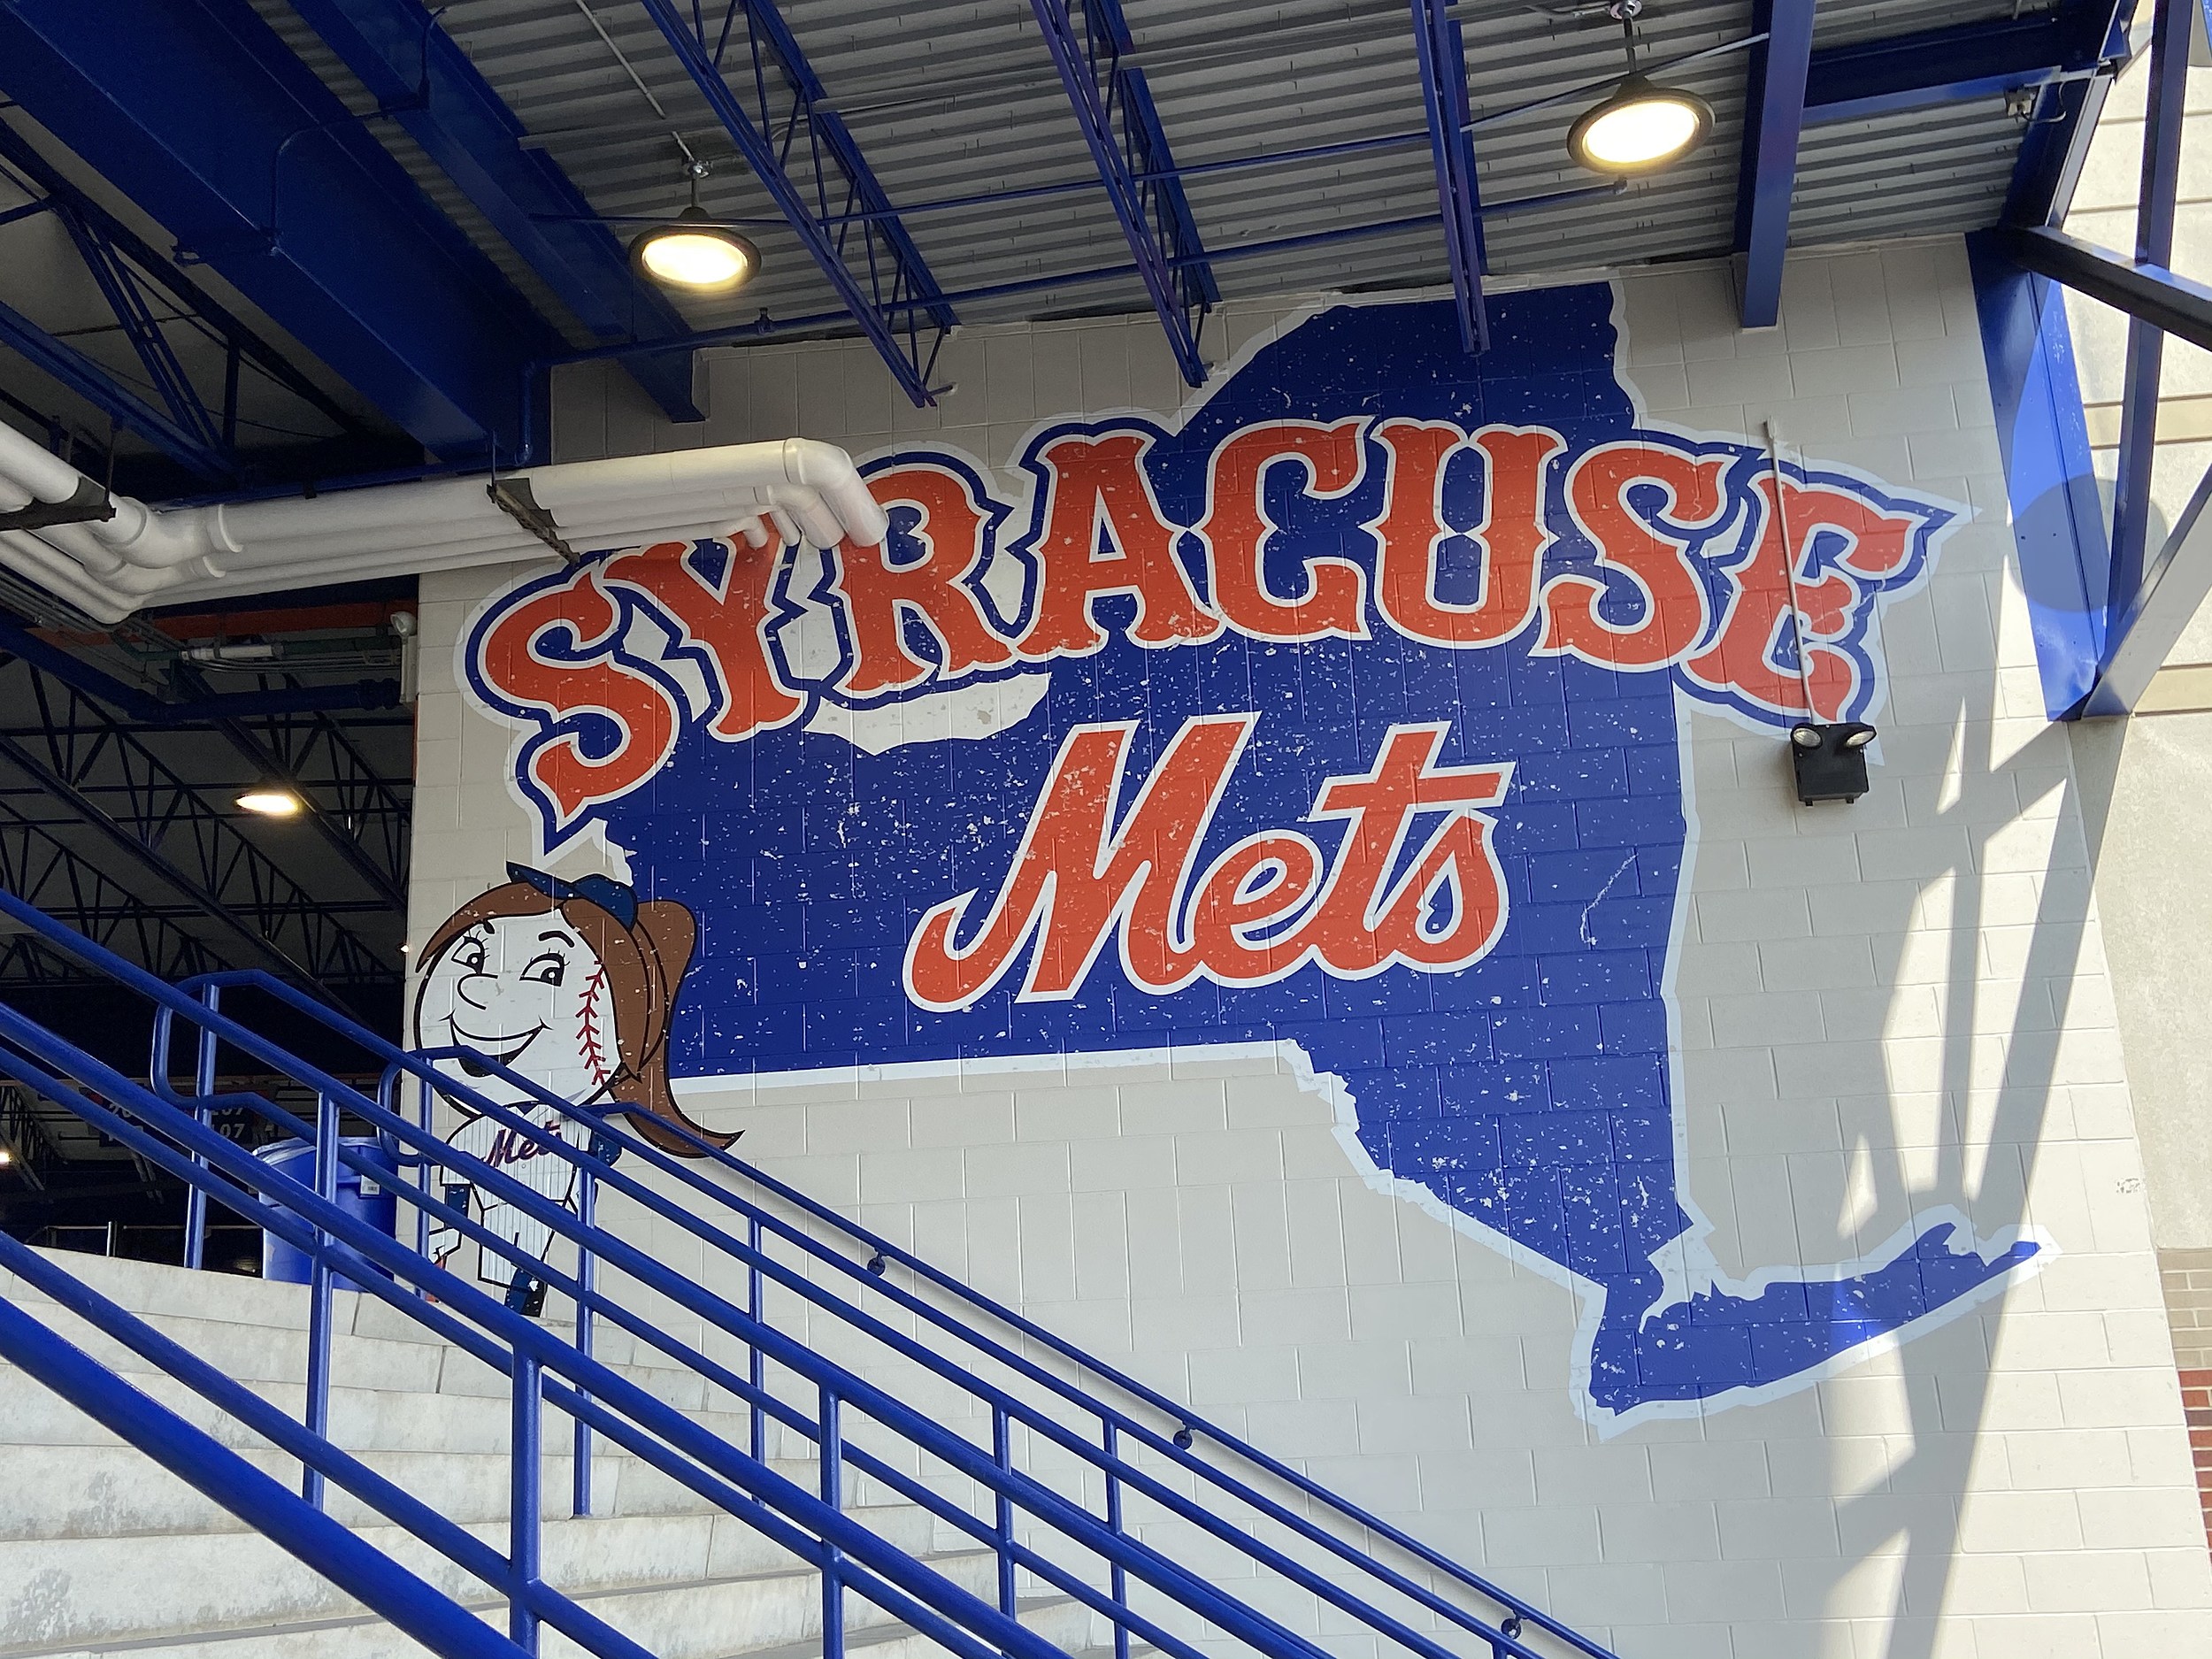 Syracuse Mets Alternate